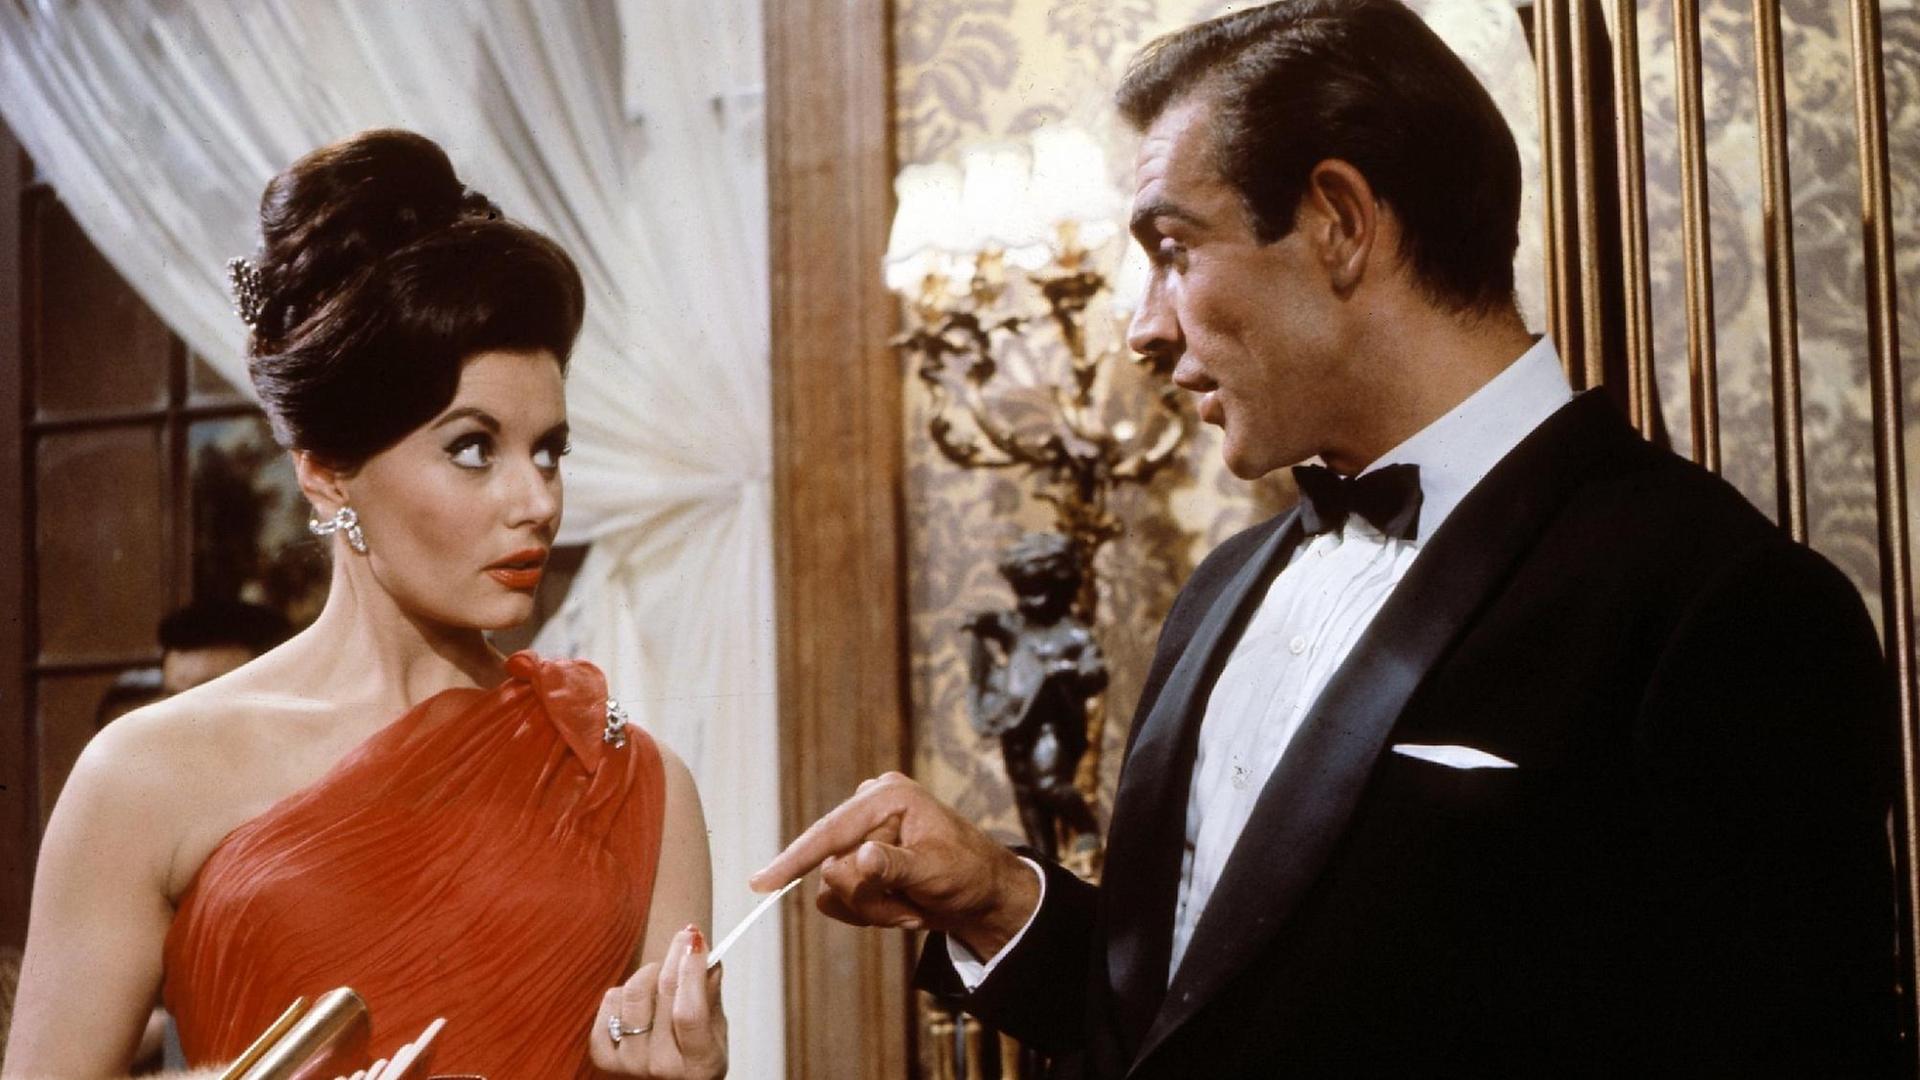 Sean Connery als 007 überreicht Eunice Gaysson als Sylvia in dem britischen Film "James Bond - 007 jagt Dr. No" Casino-Chips.